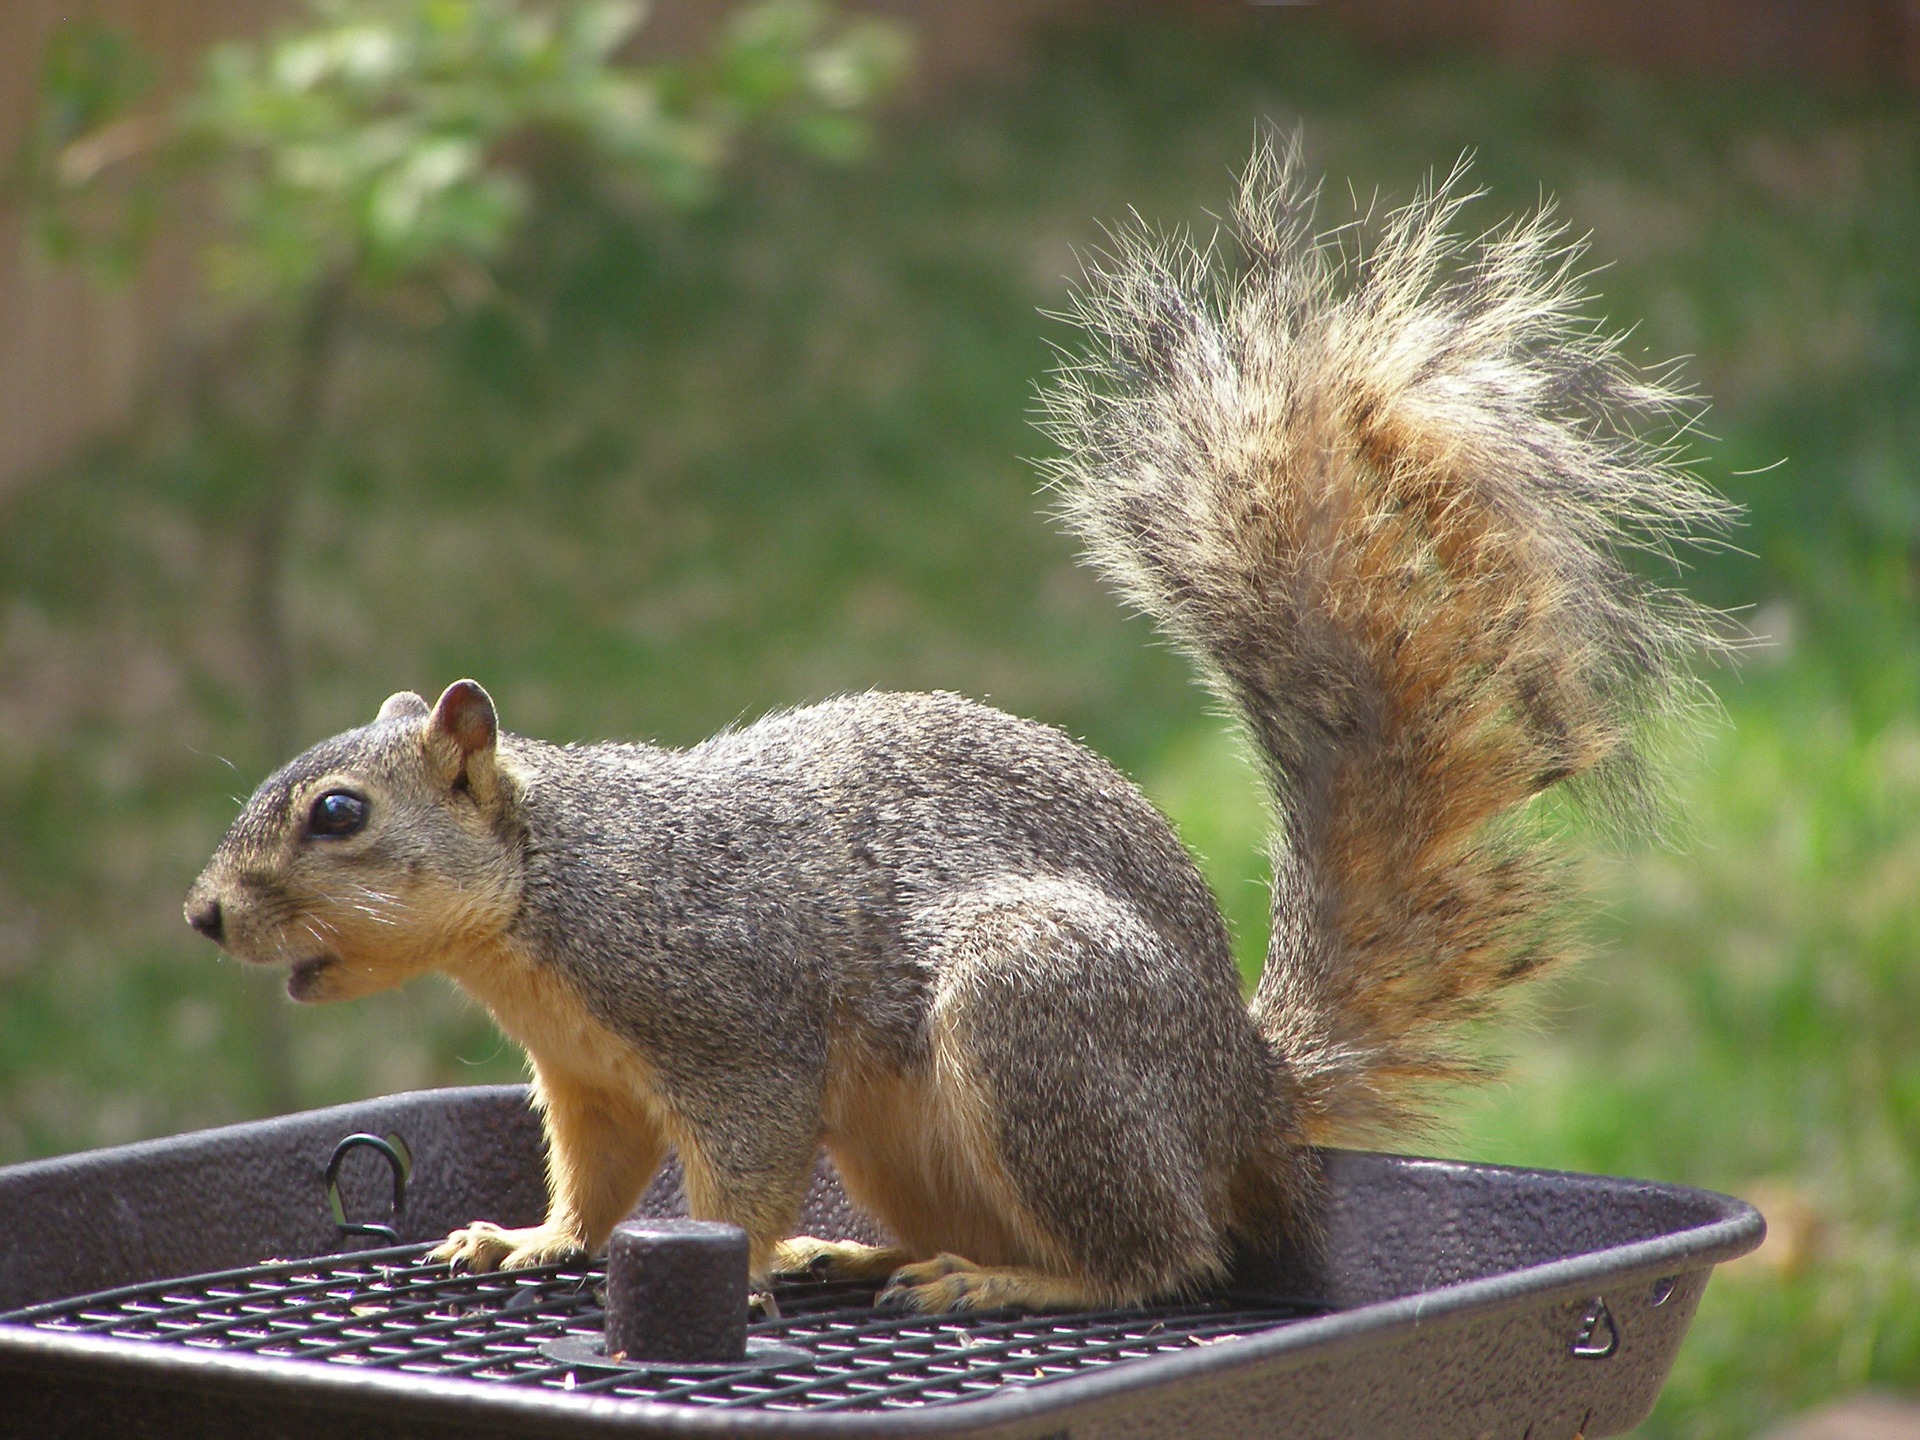 squirrel on feeder - feeding wild squirrels